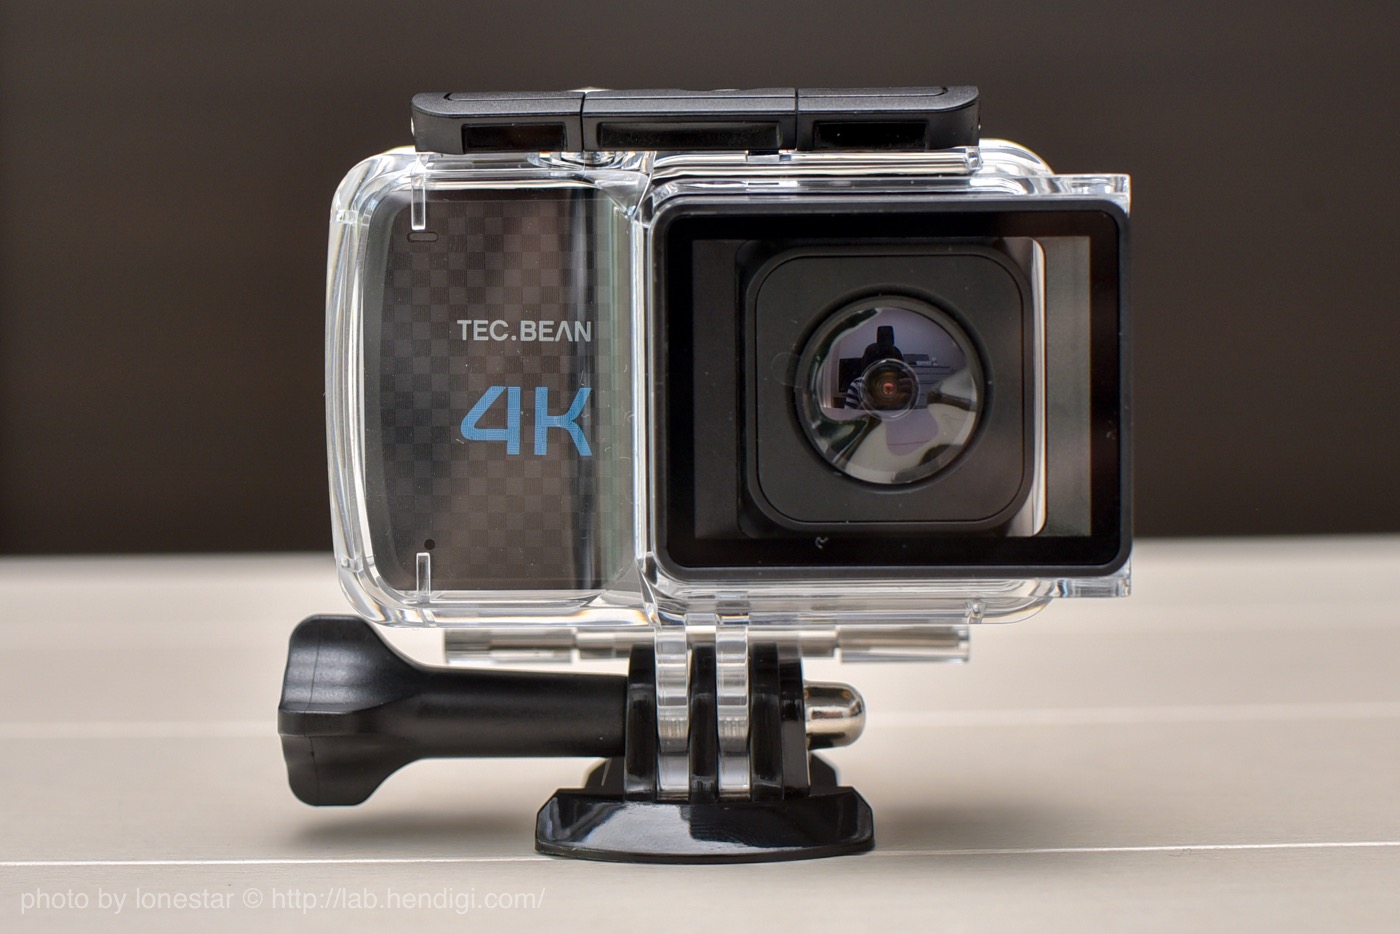 TEC.BEAN 4Kアクションカメラ T3 レビュー